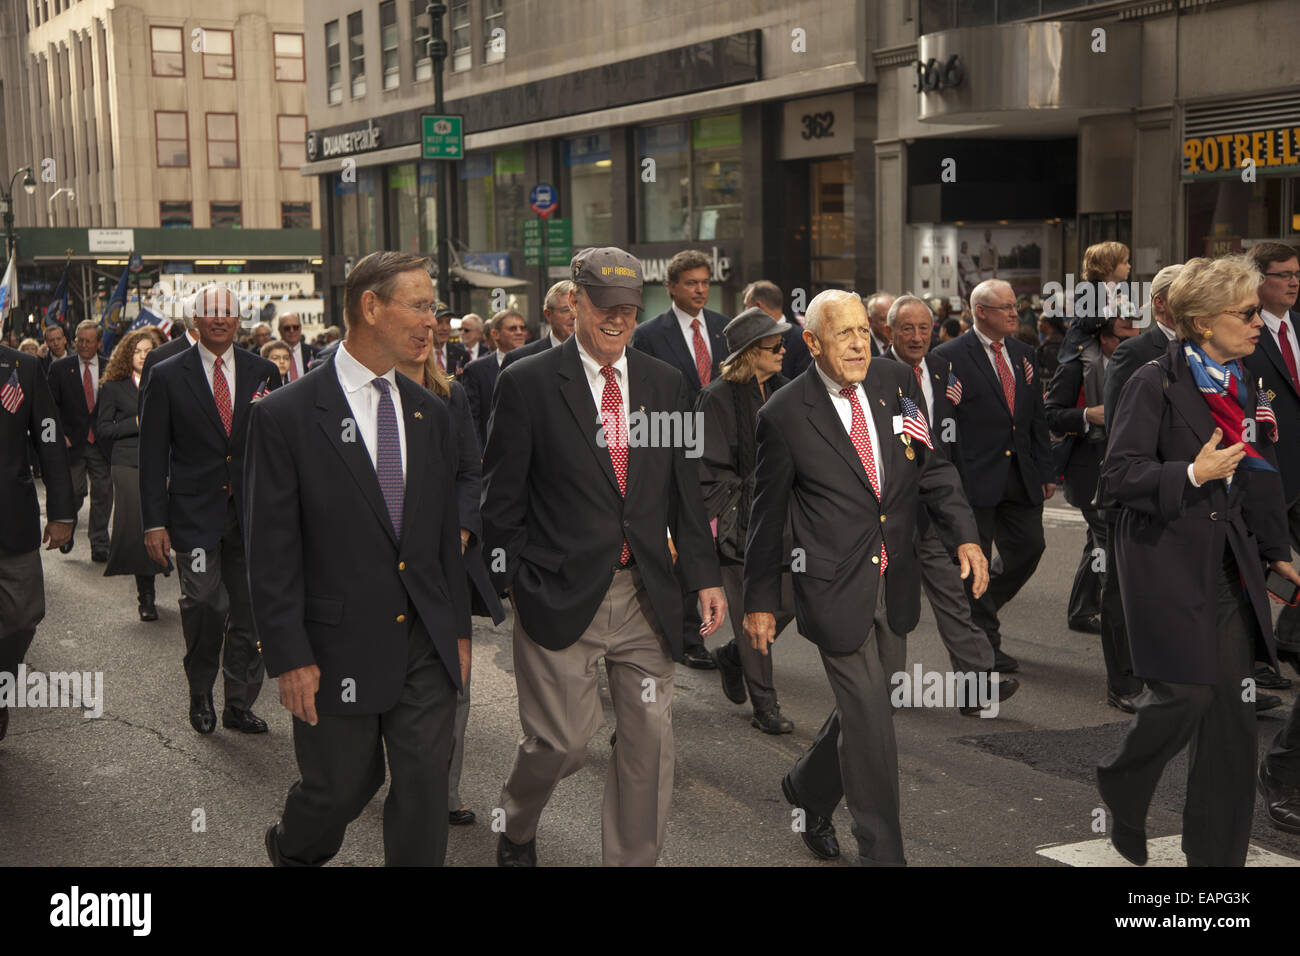 Défilé des anciens combattants, 5e Avenue, New York City. Les membres de l'Union League Club mars fièrement dans le défilé. Banque D'Images